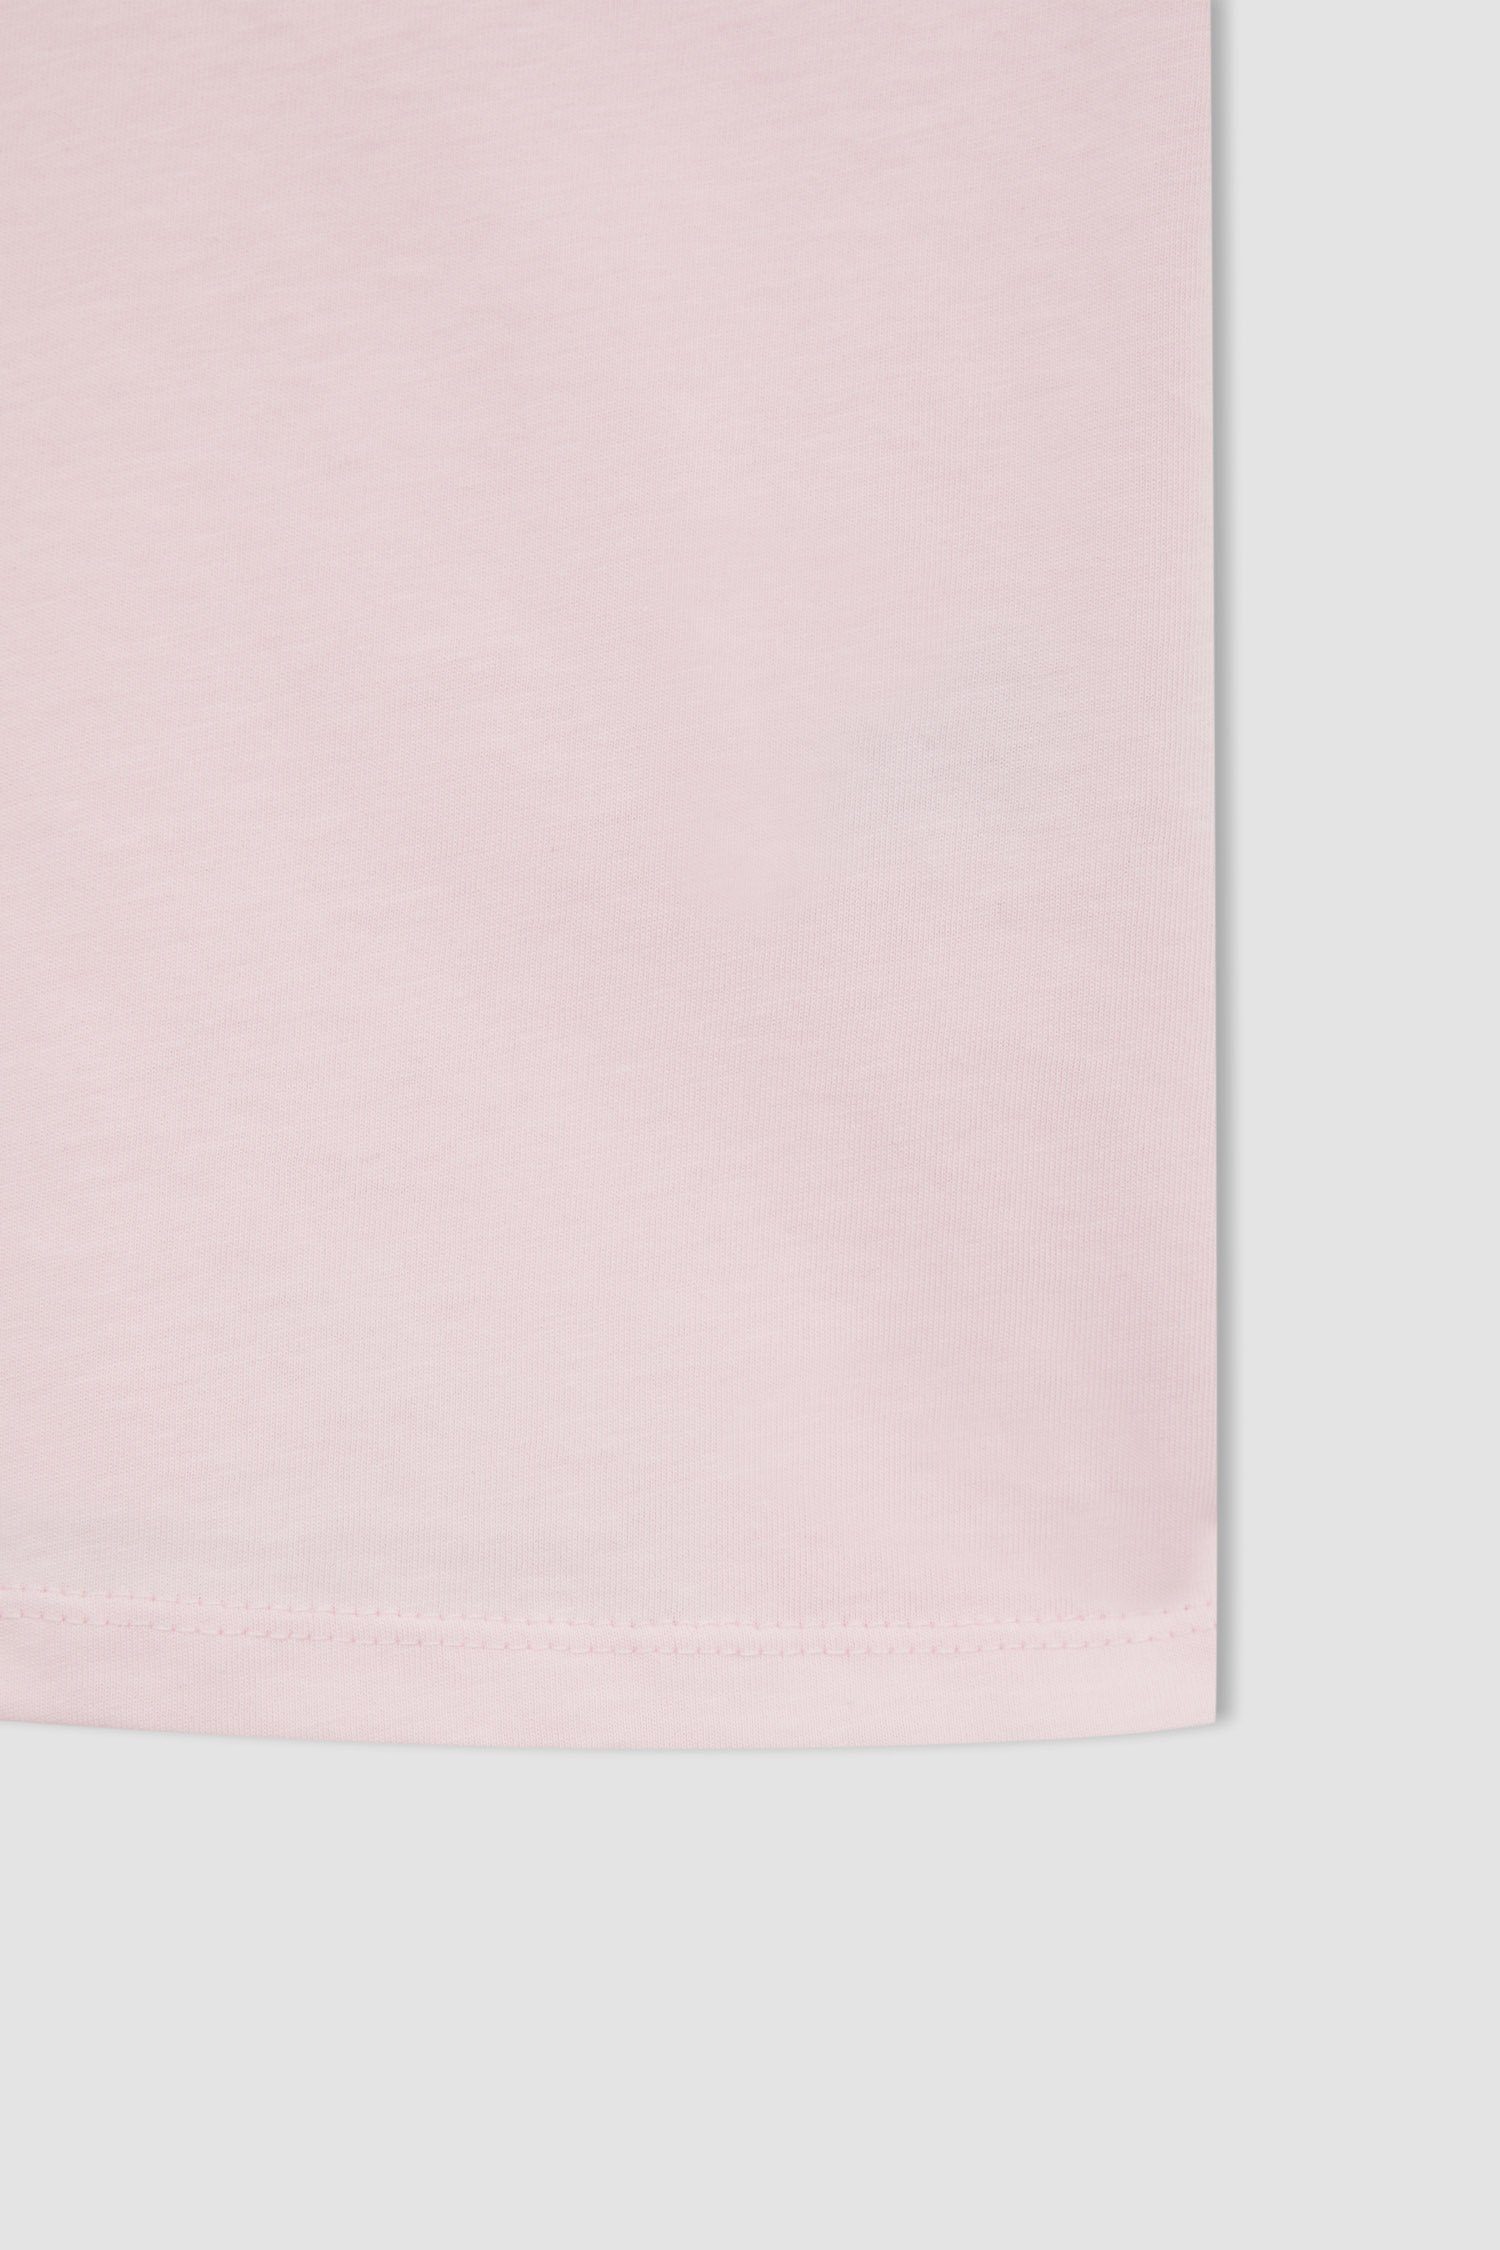 DeFacto T-Shirt T-Shirt REGULAR FIT Rosa